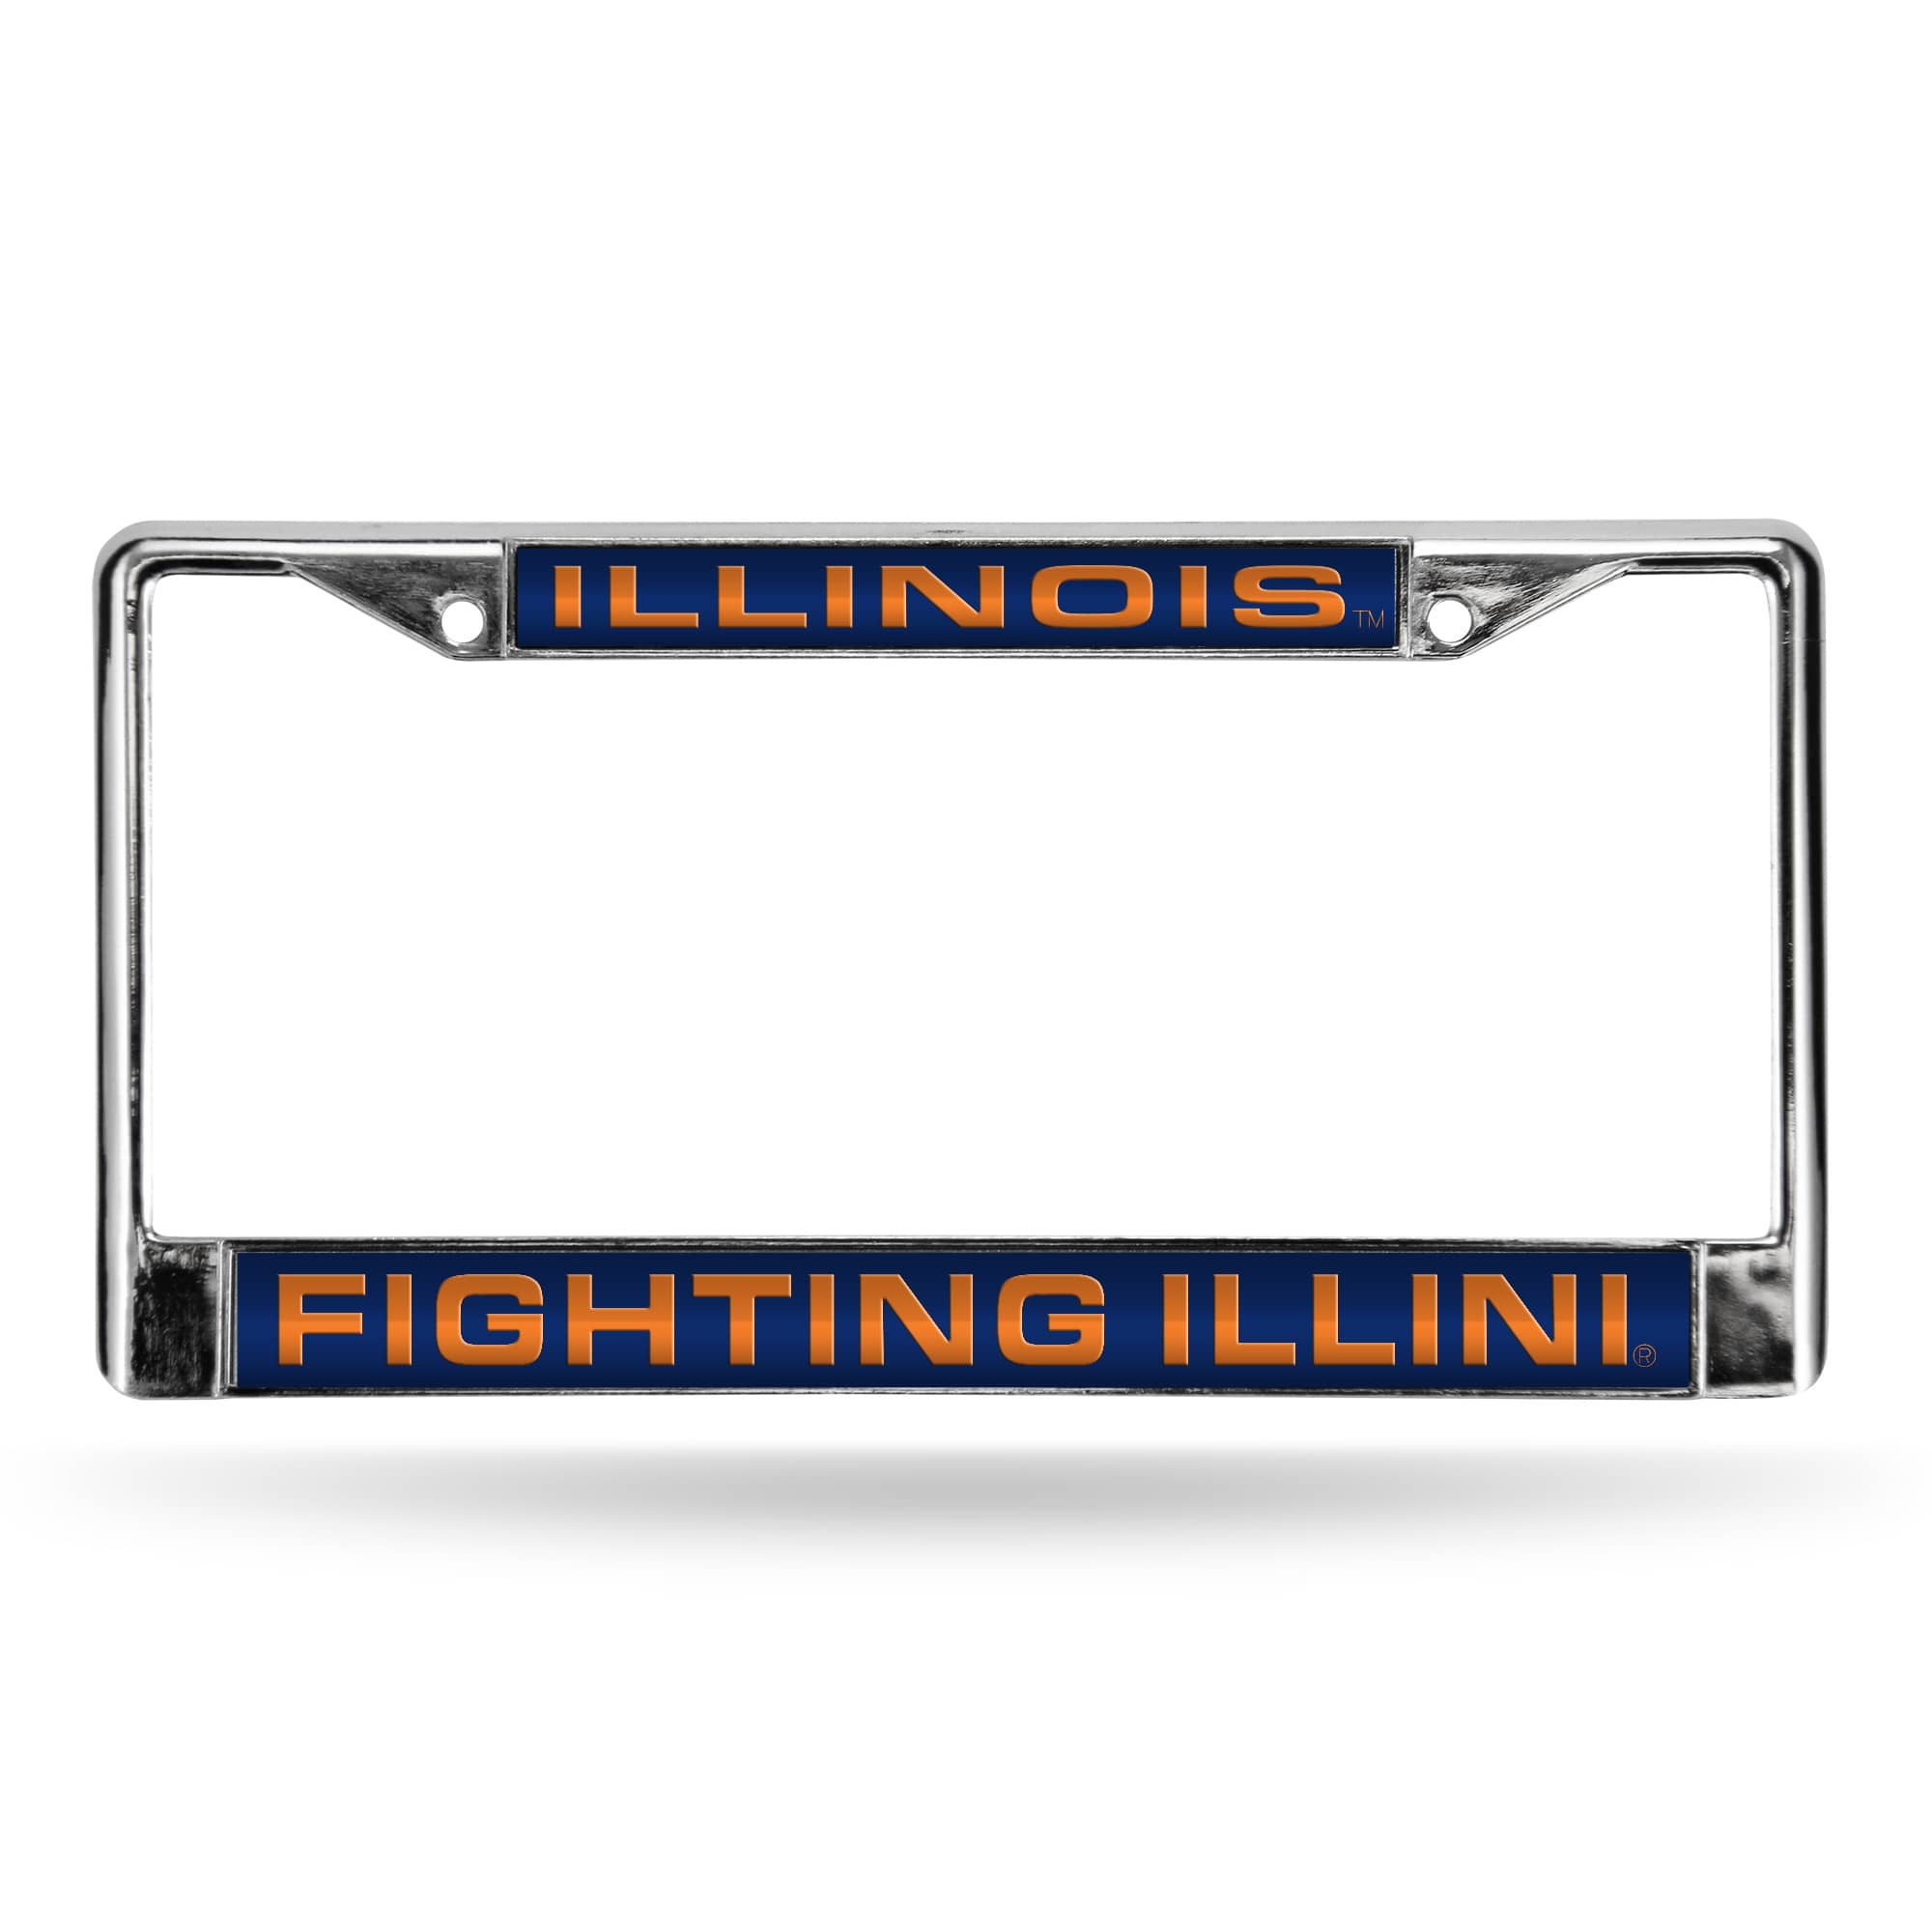 Rico 6" x 12" Silver Colored and Blue College Illinois Fighting Illini License Plate Cover